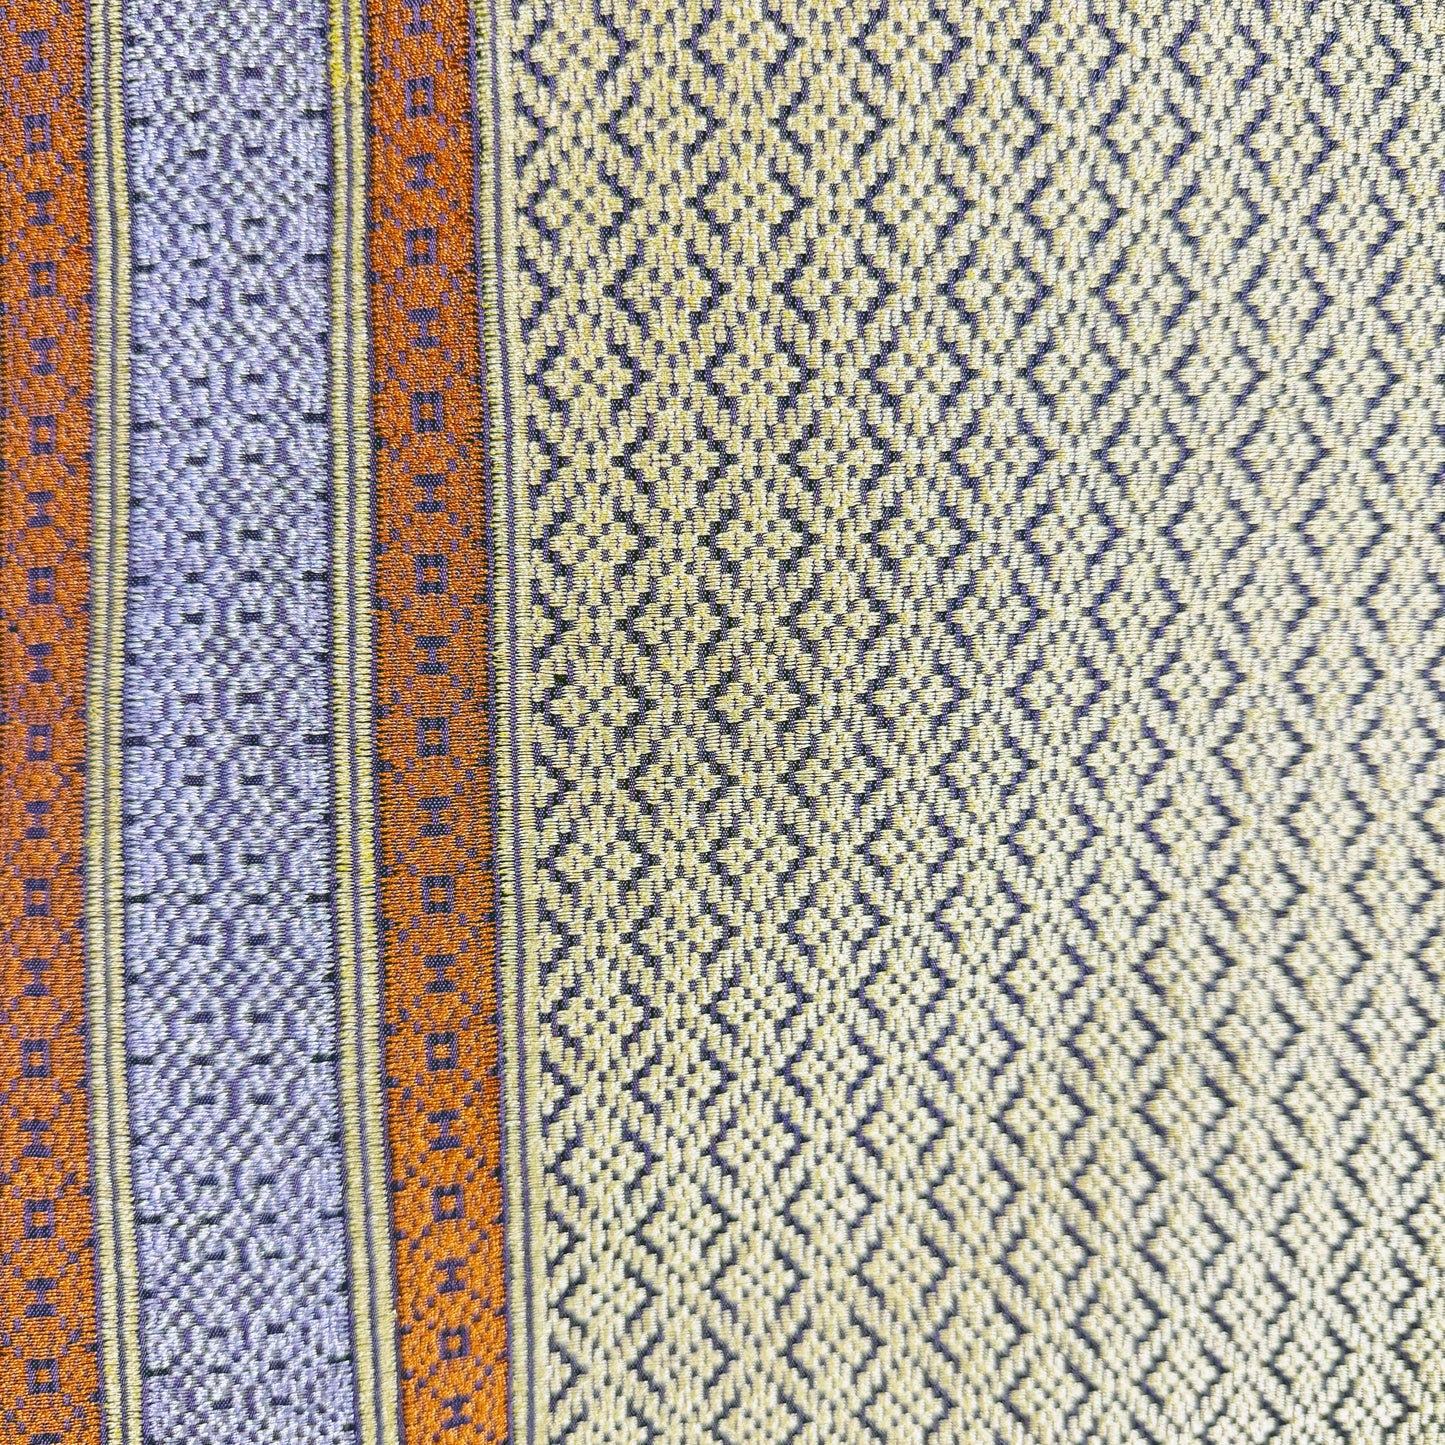 Indera Kayangan handwoven silk songket sampin textile